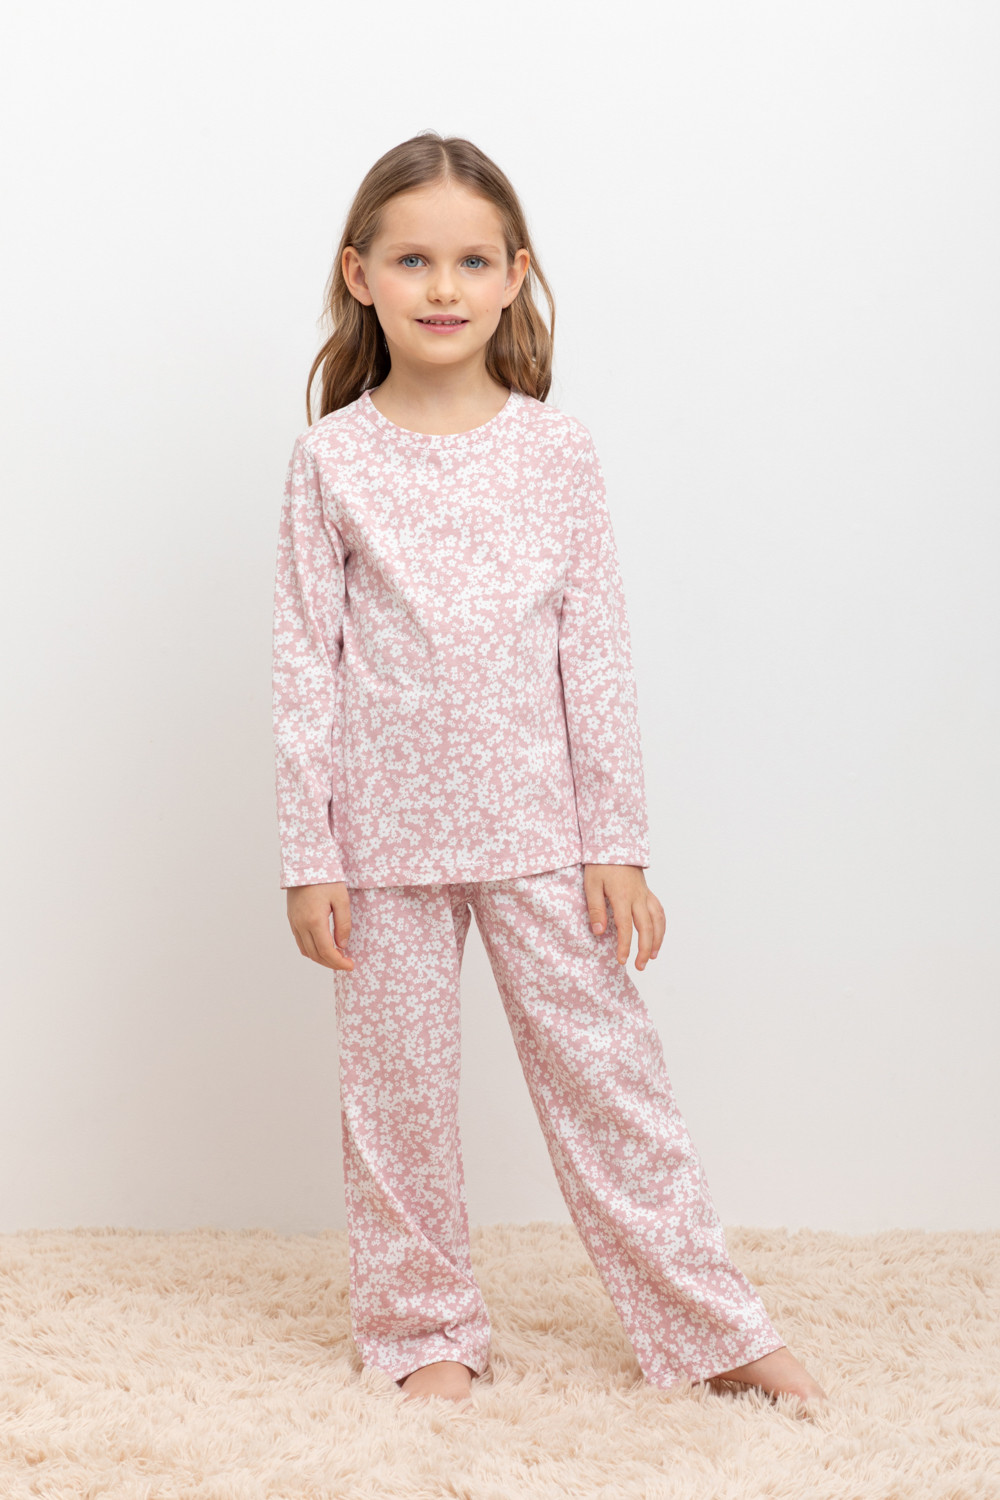 Пижама детская CROCKID МК 1512, М 3055-5, бледно-лиловый, цветочки, 128